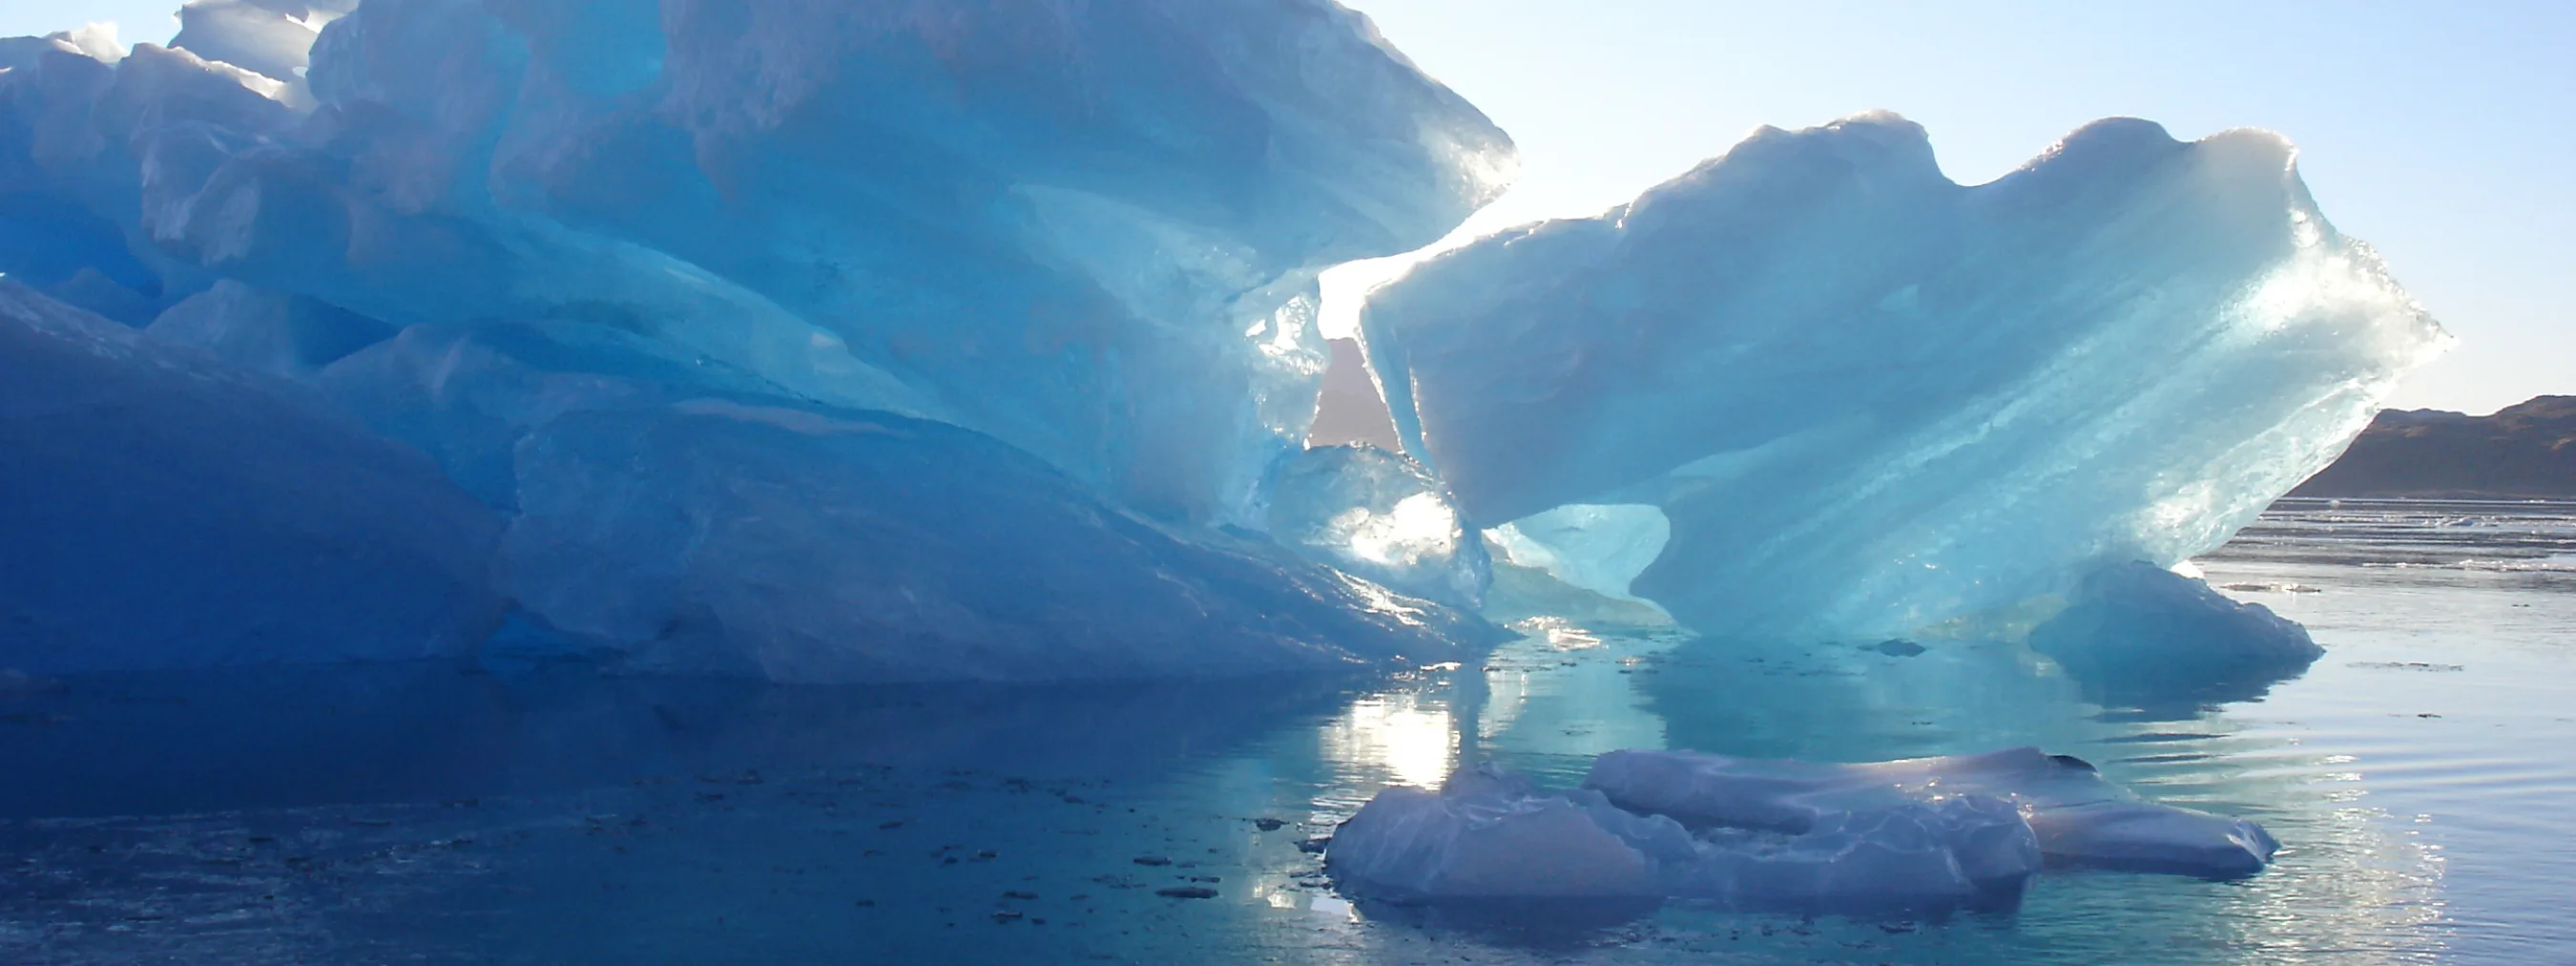 Südgrönland: Eisberg